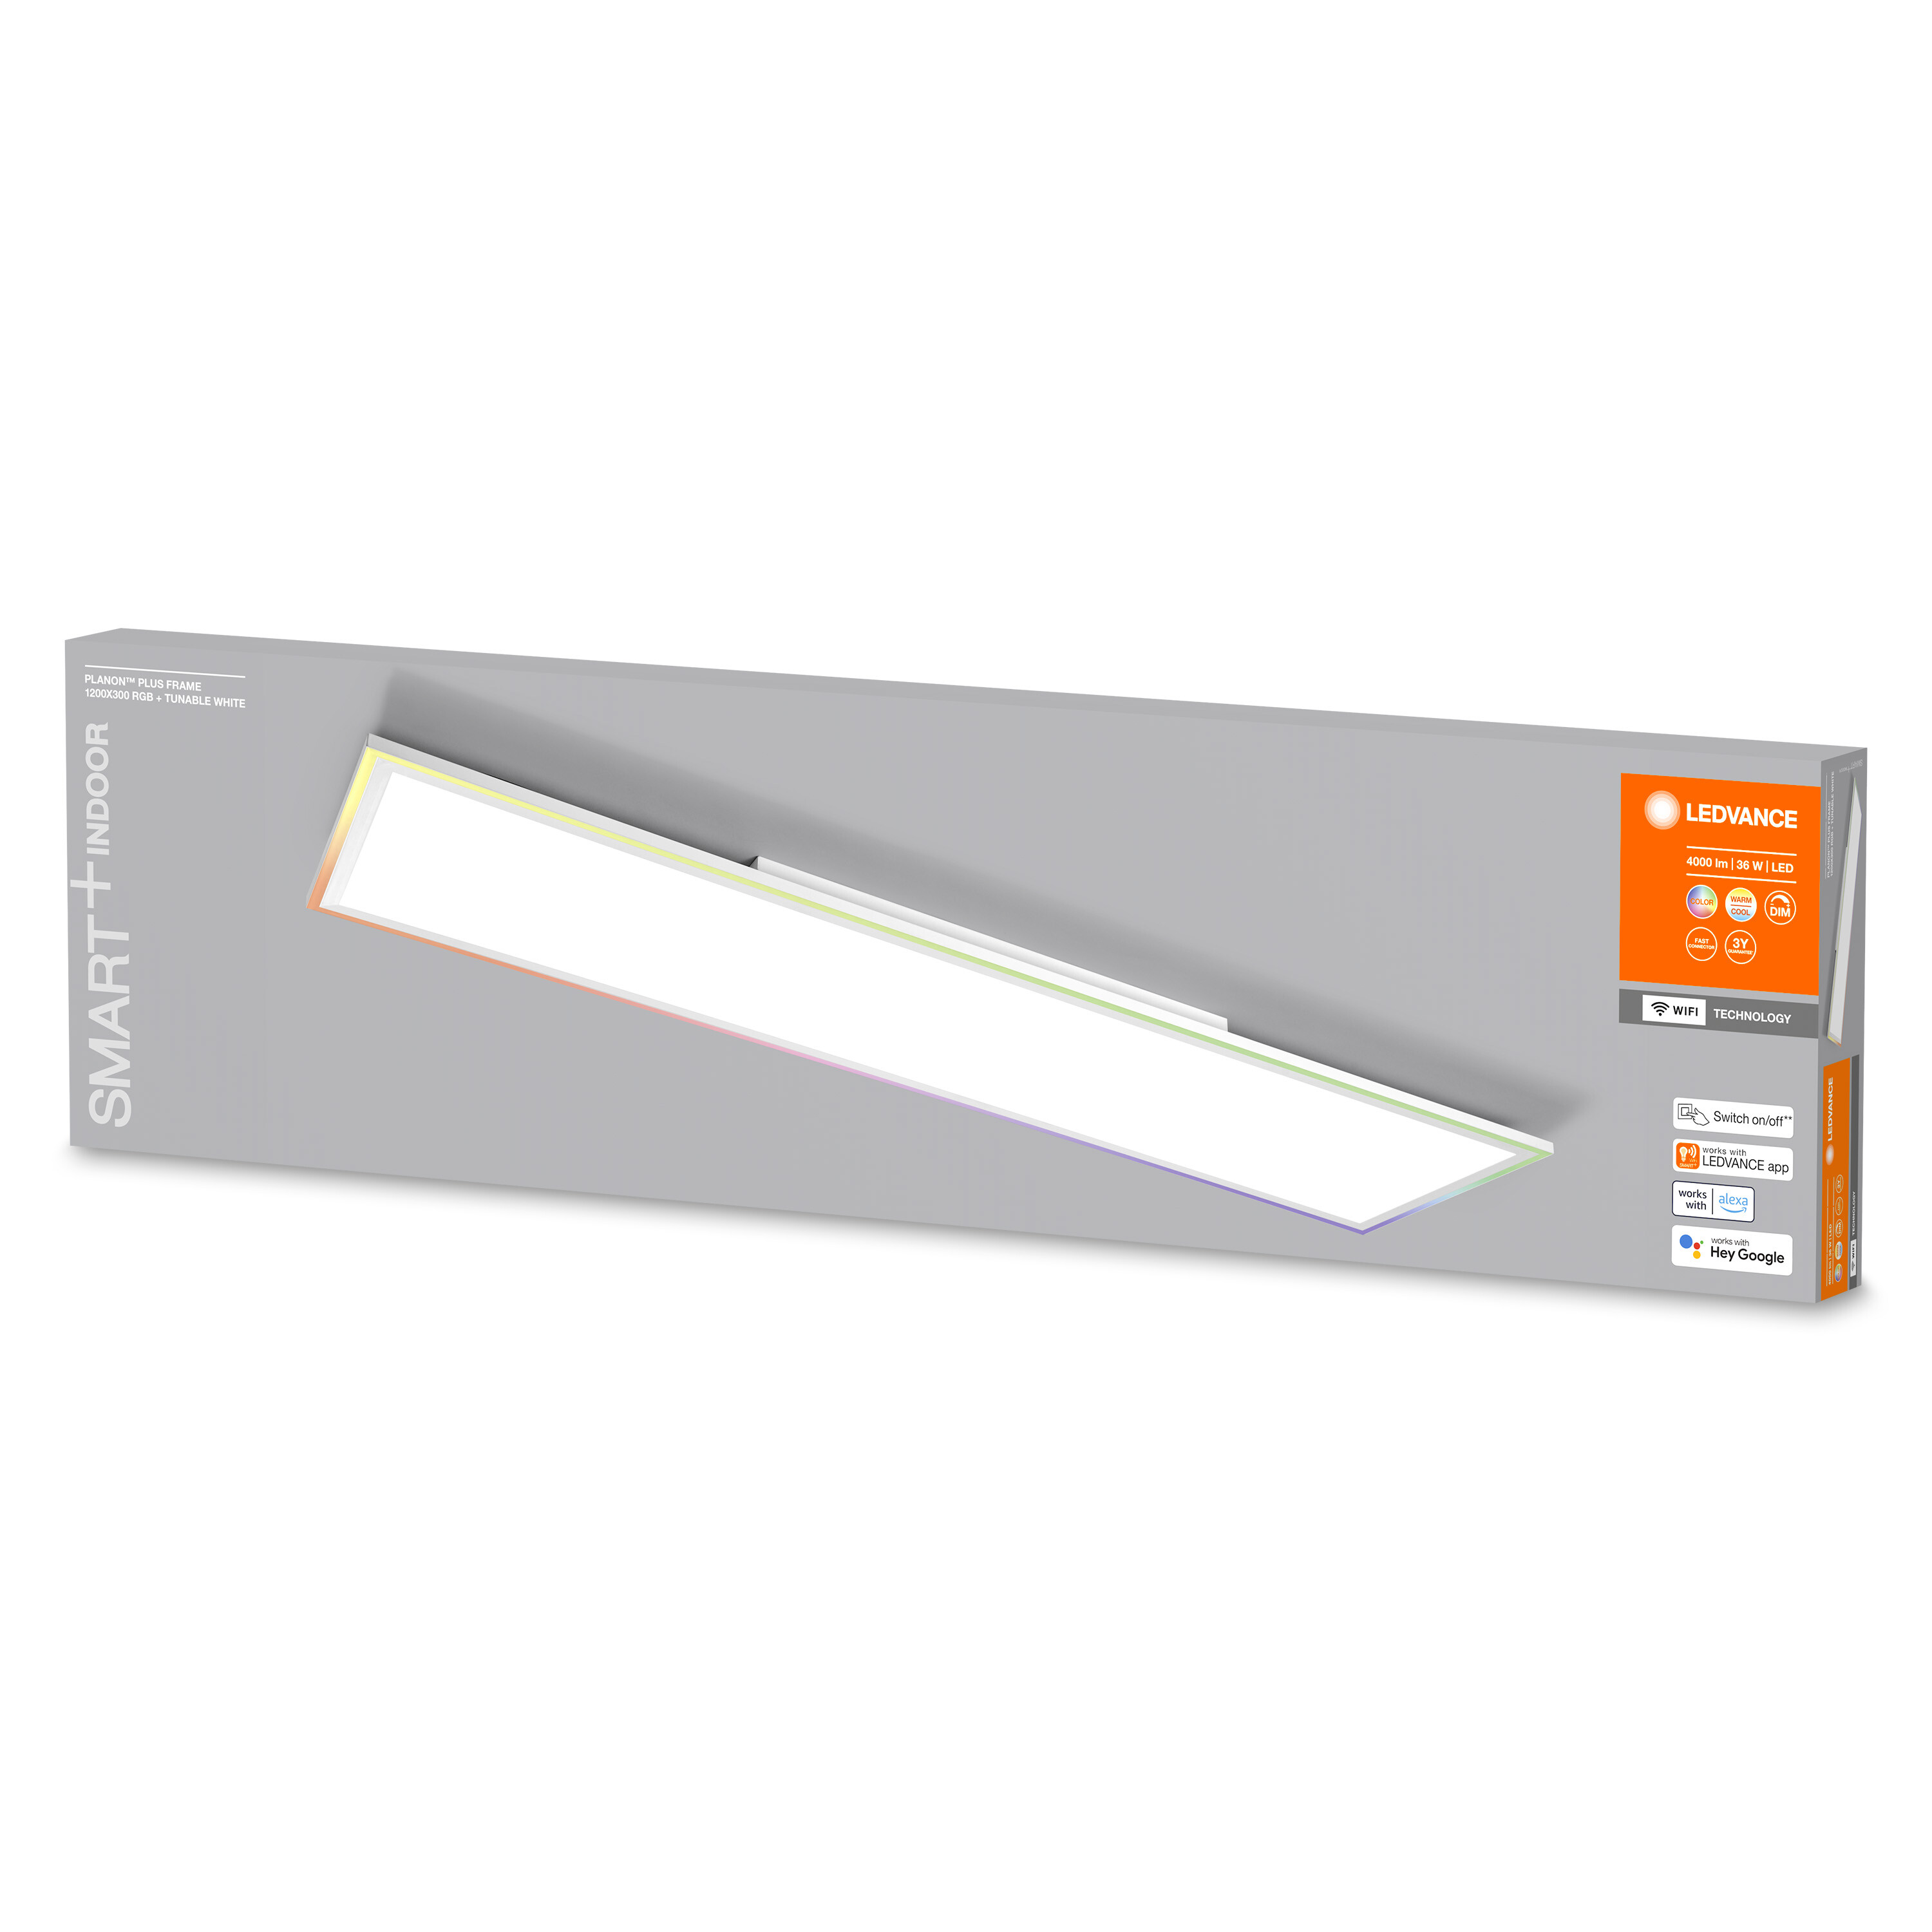 Planon White,RGB Tunable Plus Smarte LEDVANCE RGBW SMART+ Leuchte